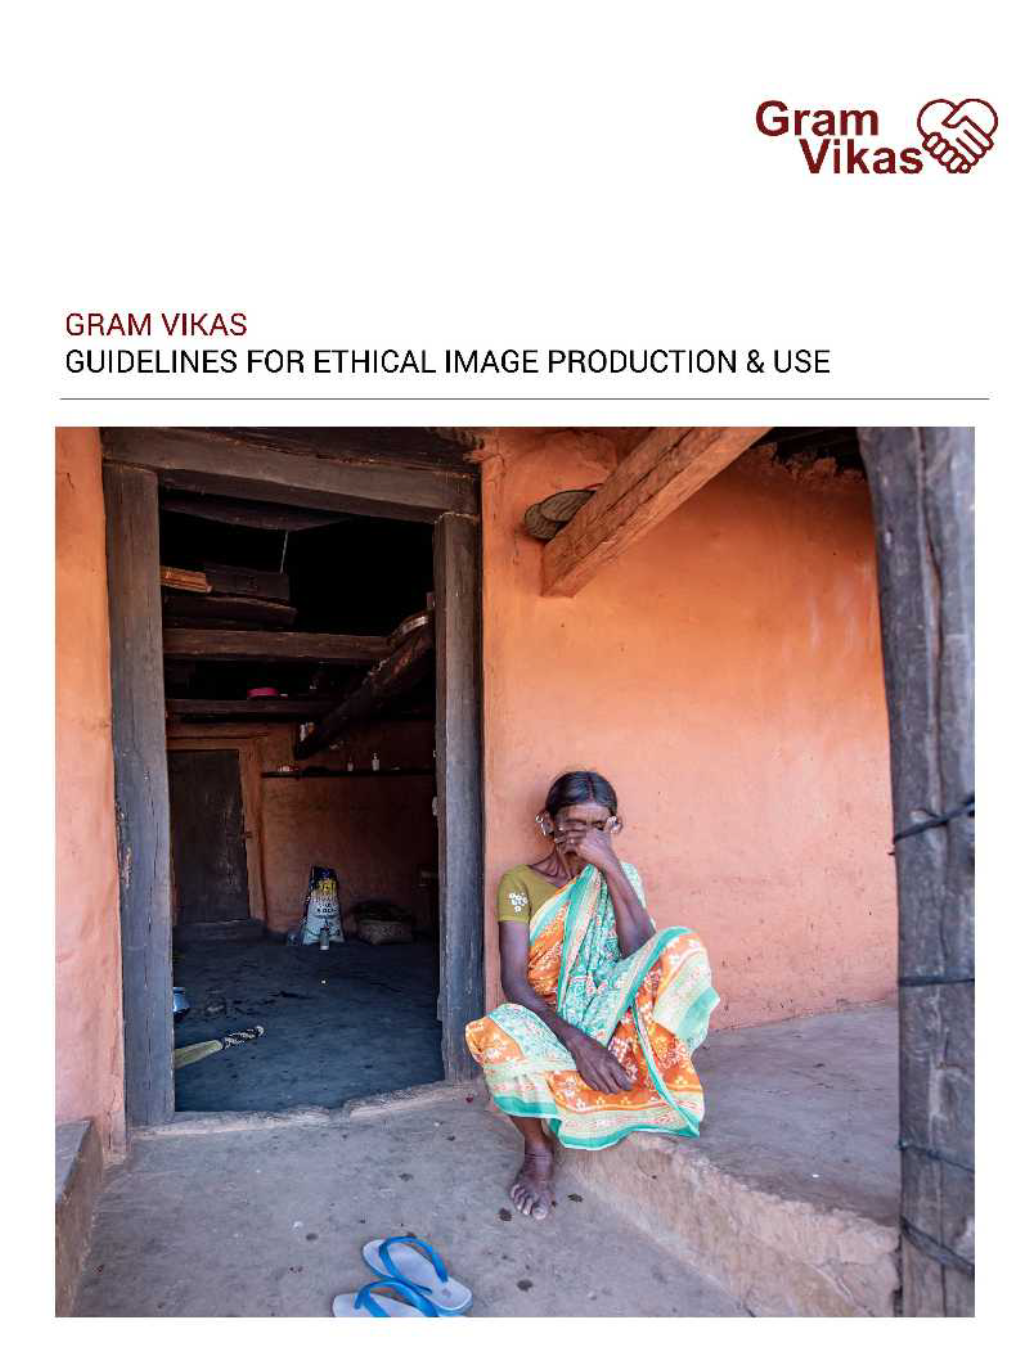 Ethical Image Production & Use